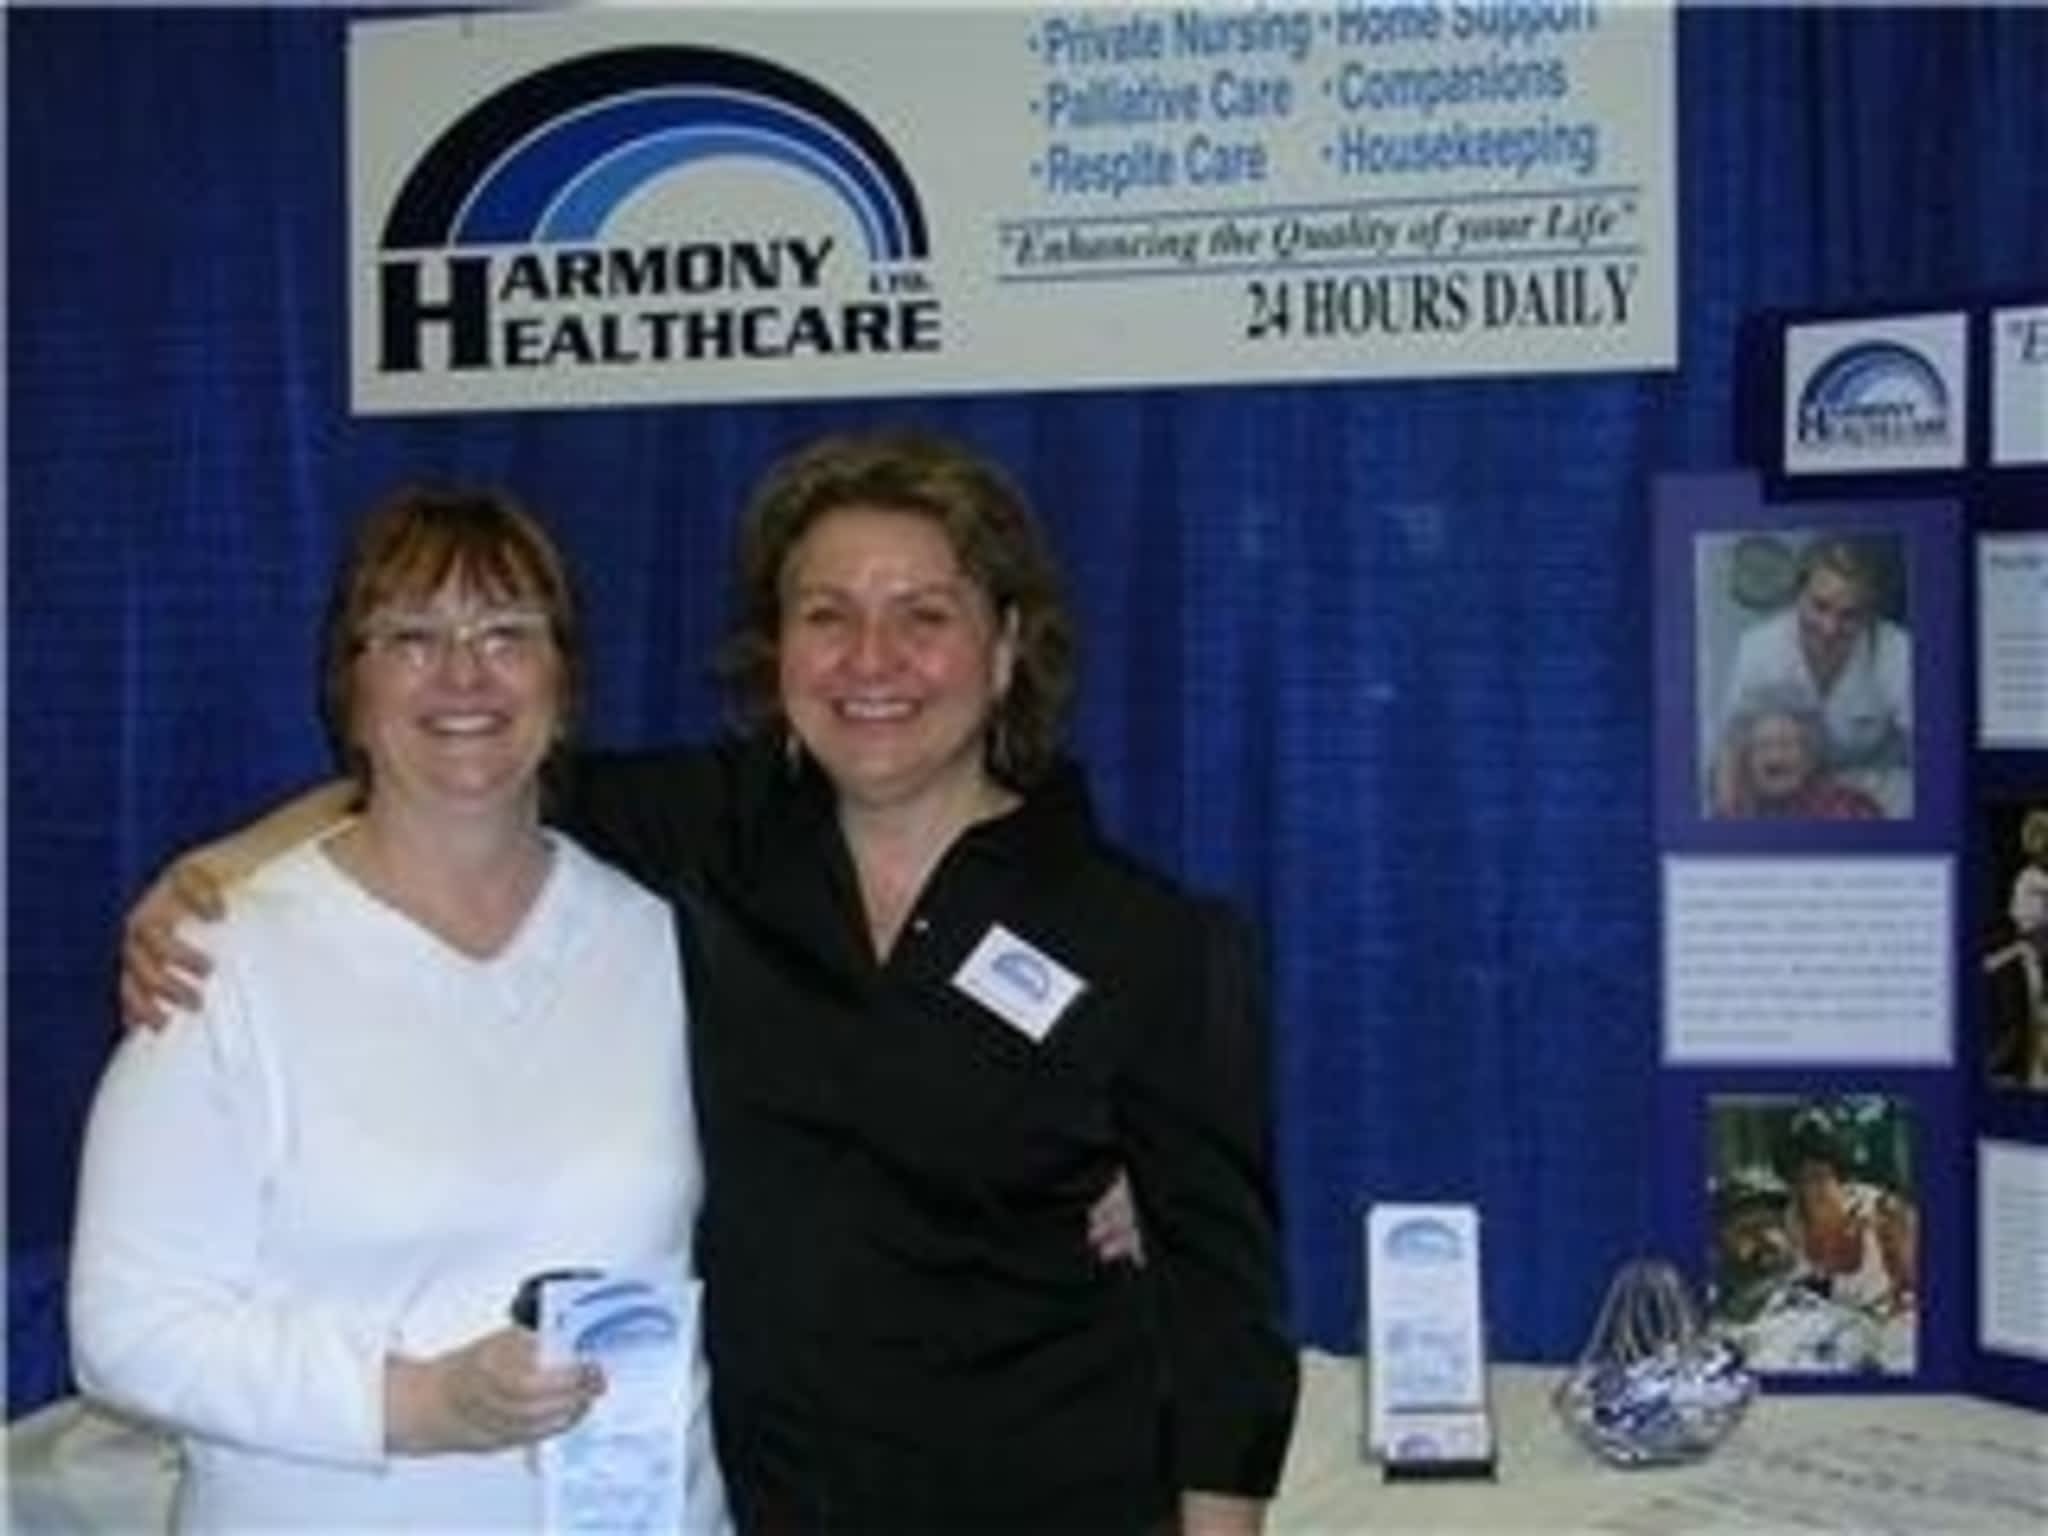 photo Harmony Health Care Ltd